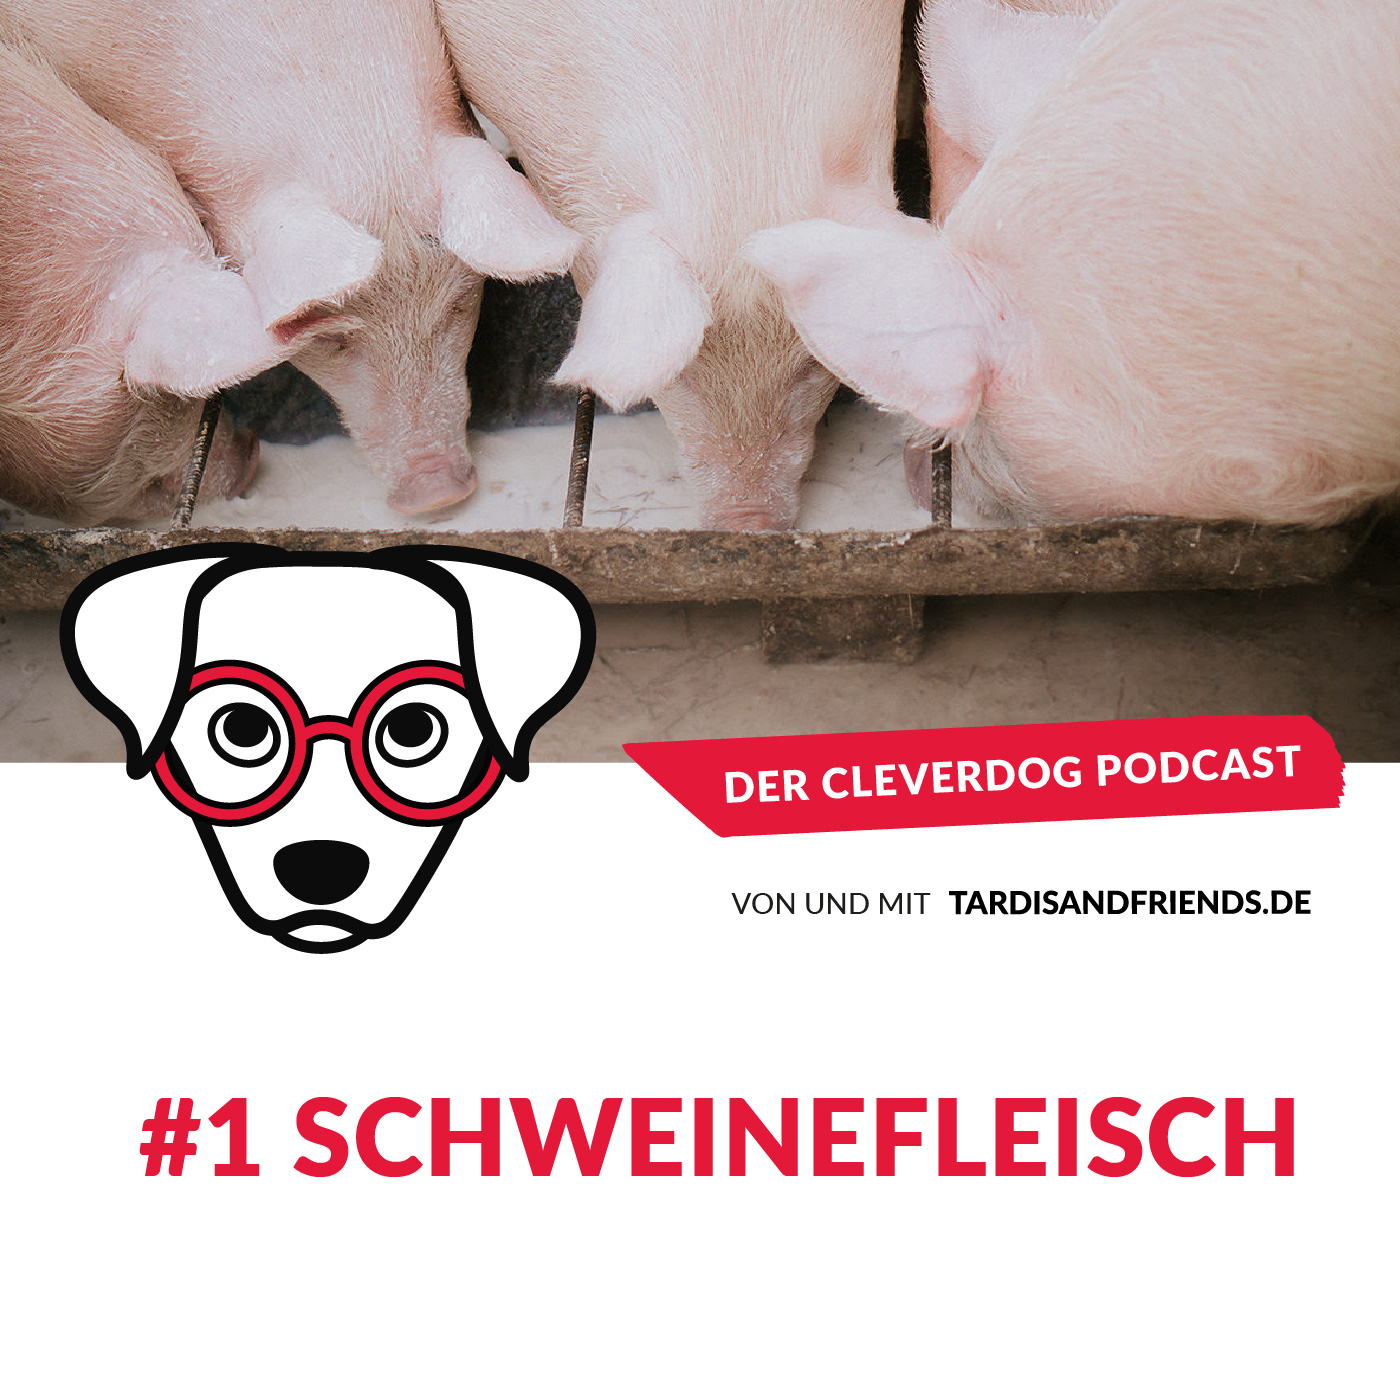 Kein Schweinefleisch für Hunde – Die Aujeszkysche Krankheit